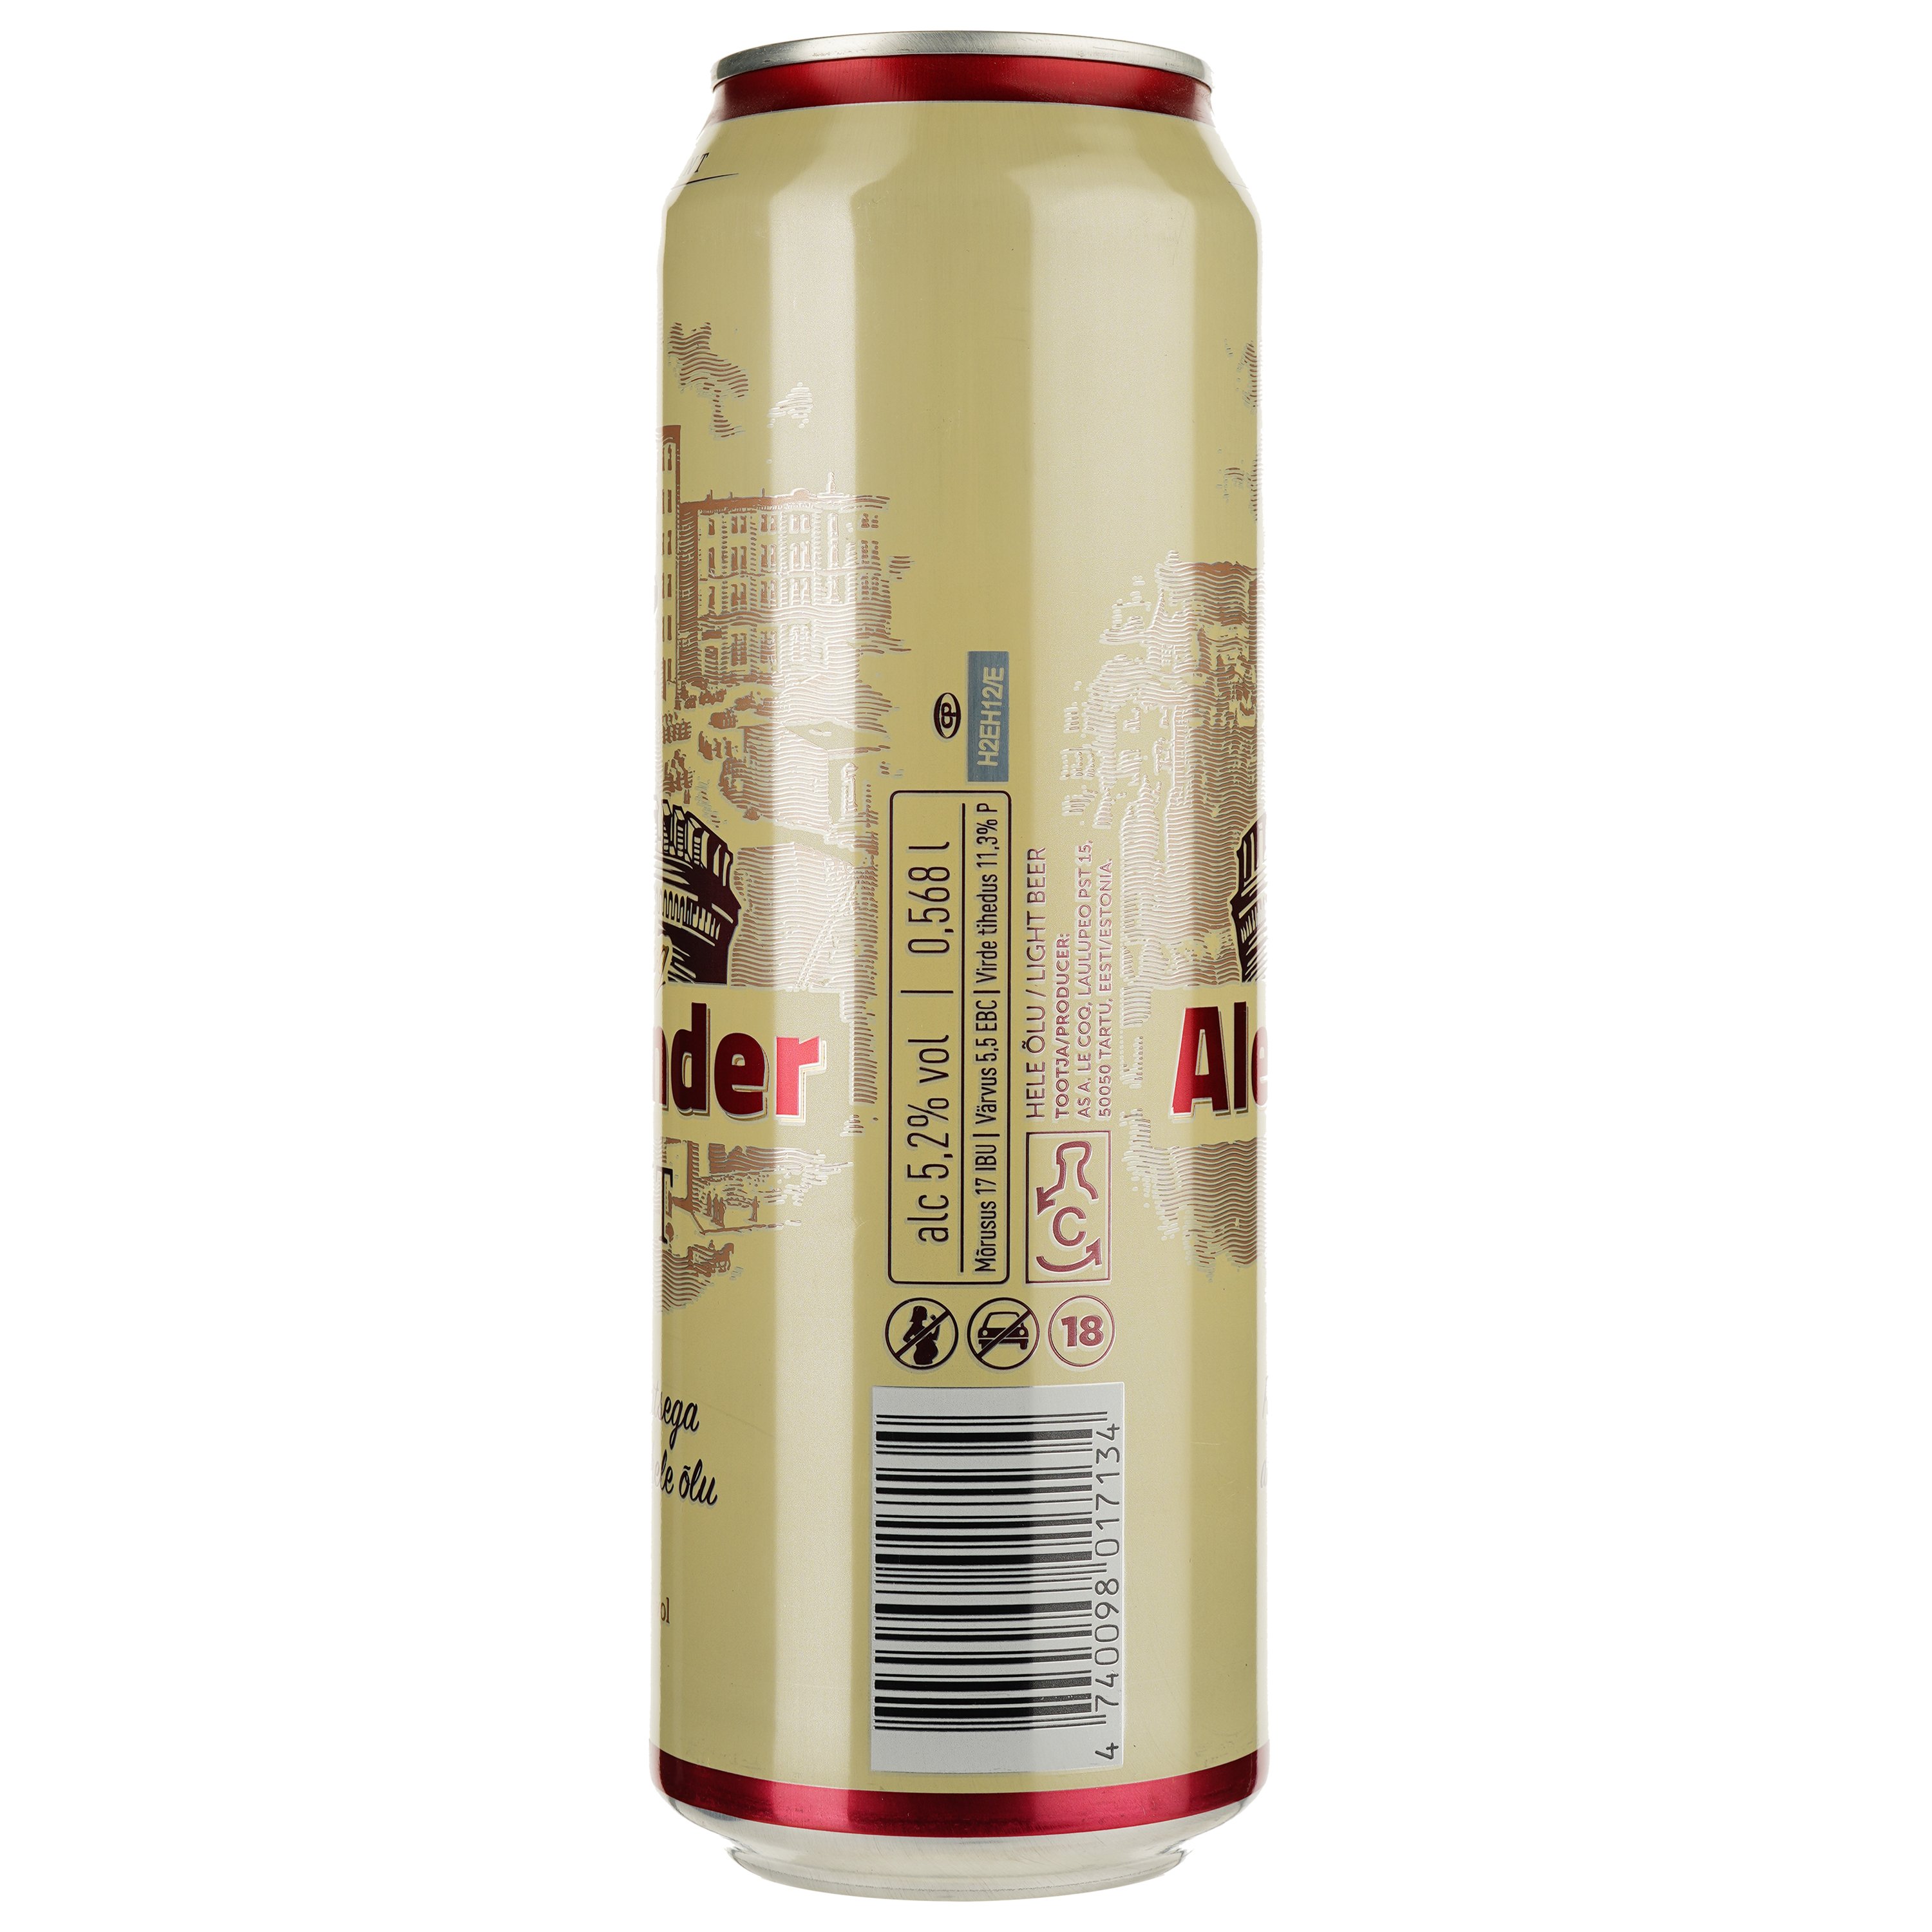 Пиво A. Le Coq Alexander, светлое, фильтрованное, 5,2%, ж/б, 0,568 л - фото 2